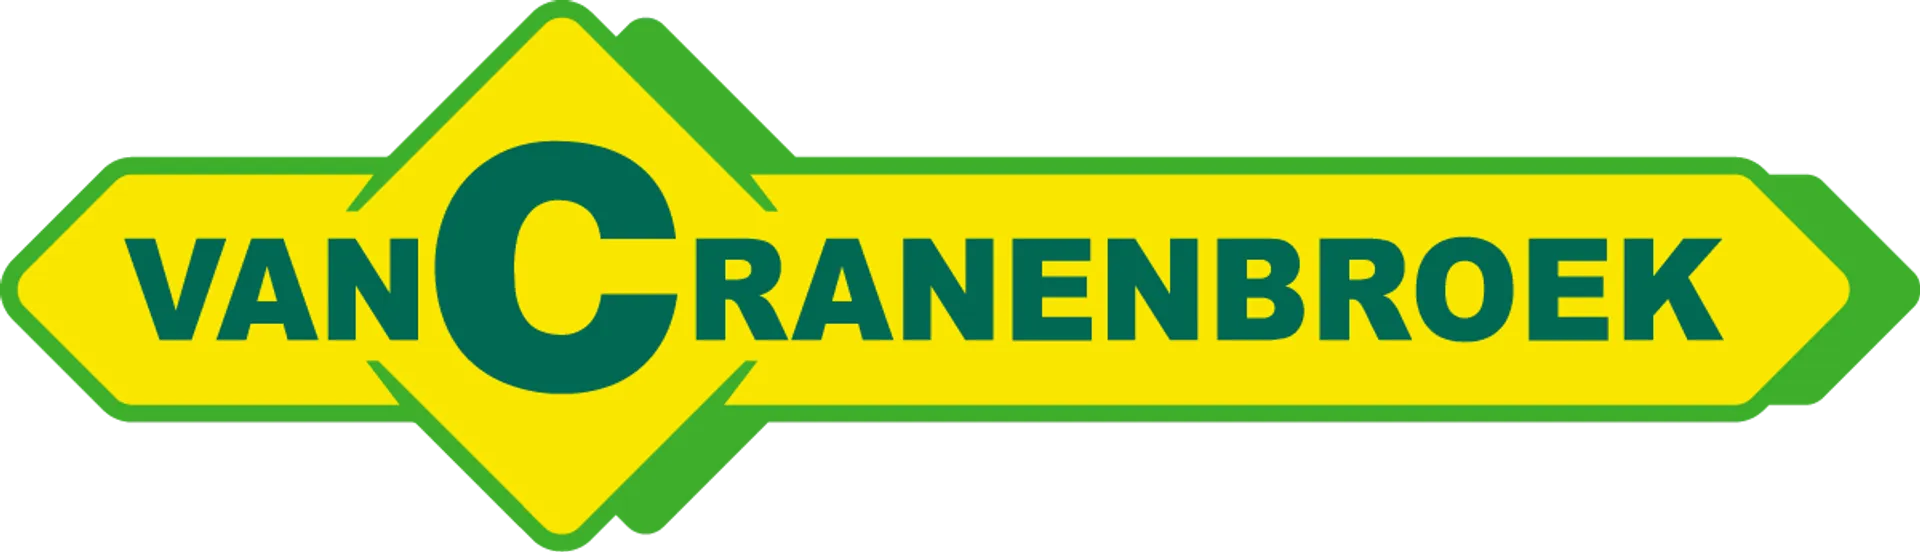 VAN CRANENBROEK logo